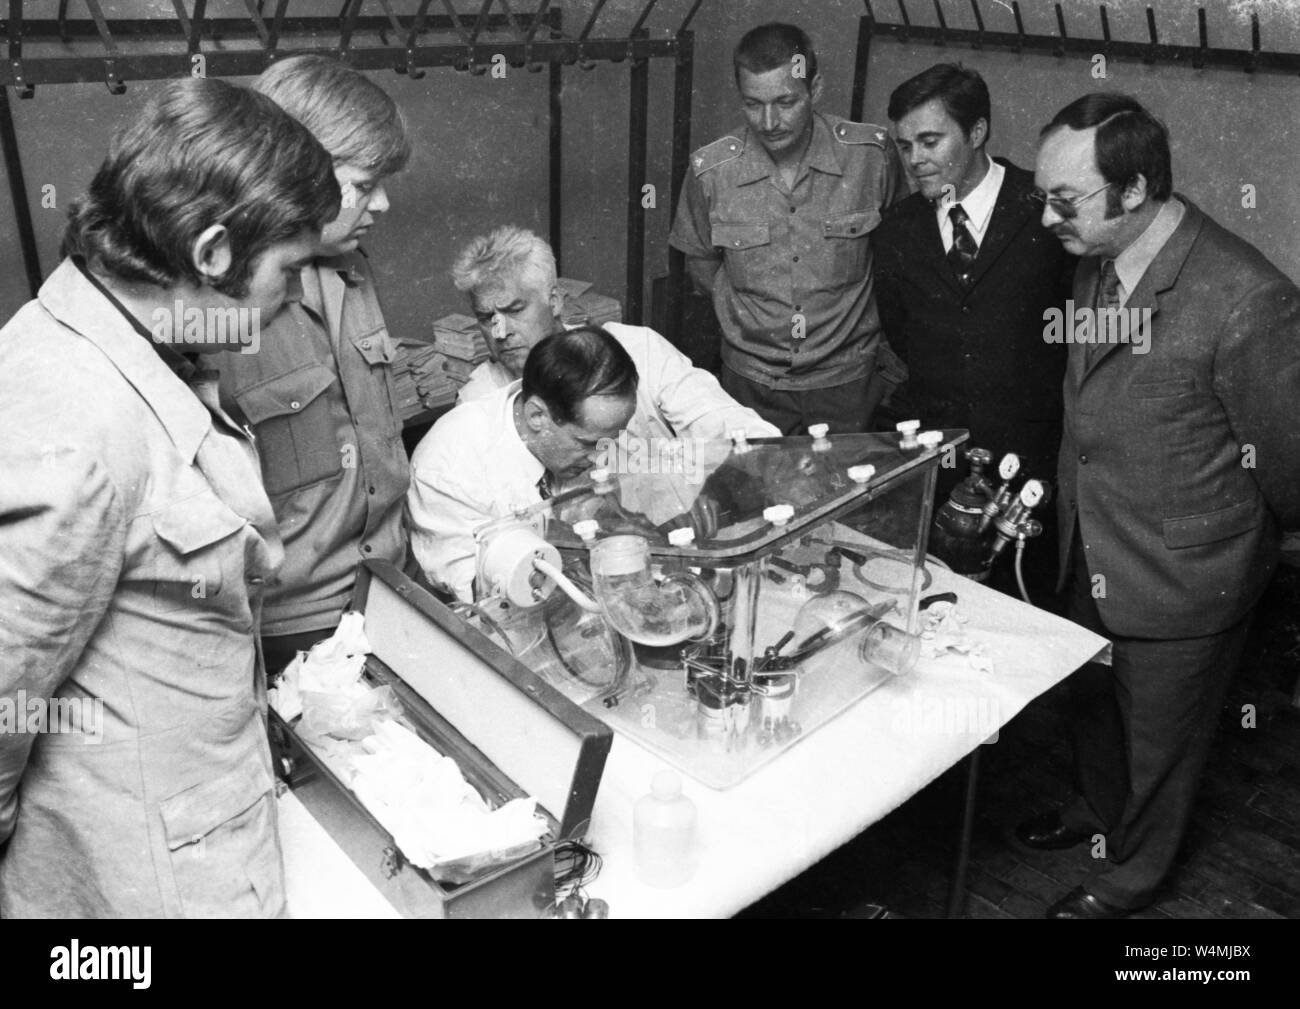 Eine Delegation von Wissenschaftlern aus der UDSSR besucht Deutschland Raumfahrttechnologie und mondstaub am 03.06.1973 in der Westfalenhalle in Dortmund ausstellen. Die Polizei kümmert sich um die Gäste und der Mond Staub, da zu dieser Zeit war es noch nicht bekannt ist, ob der secuei | Verwendung weltweit Stockfoto